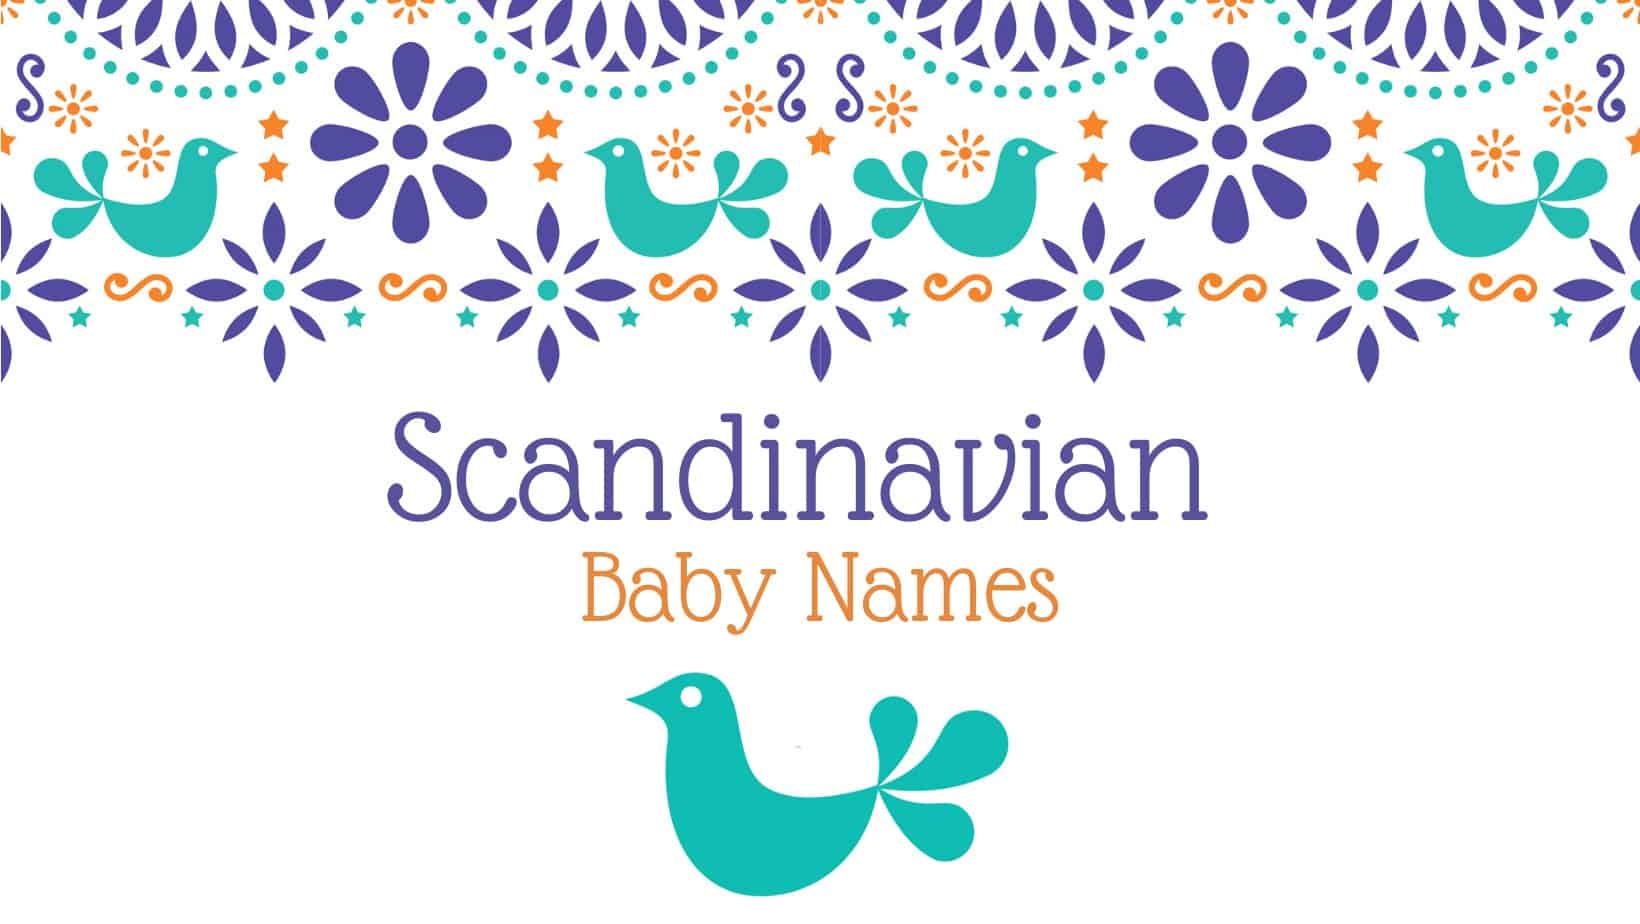 Scandinavian baby names